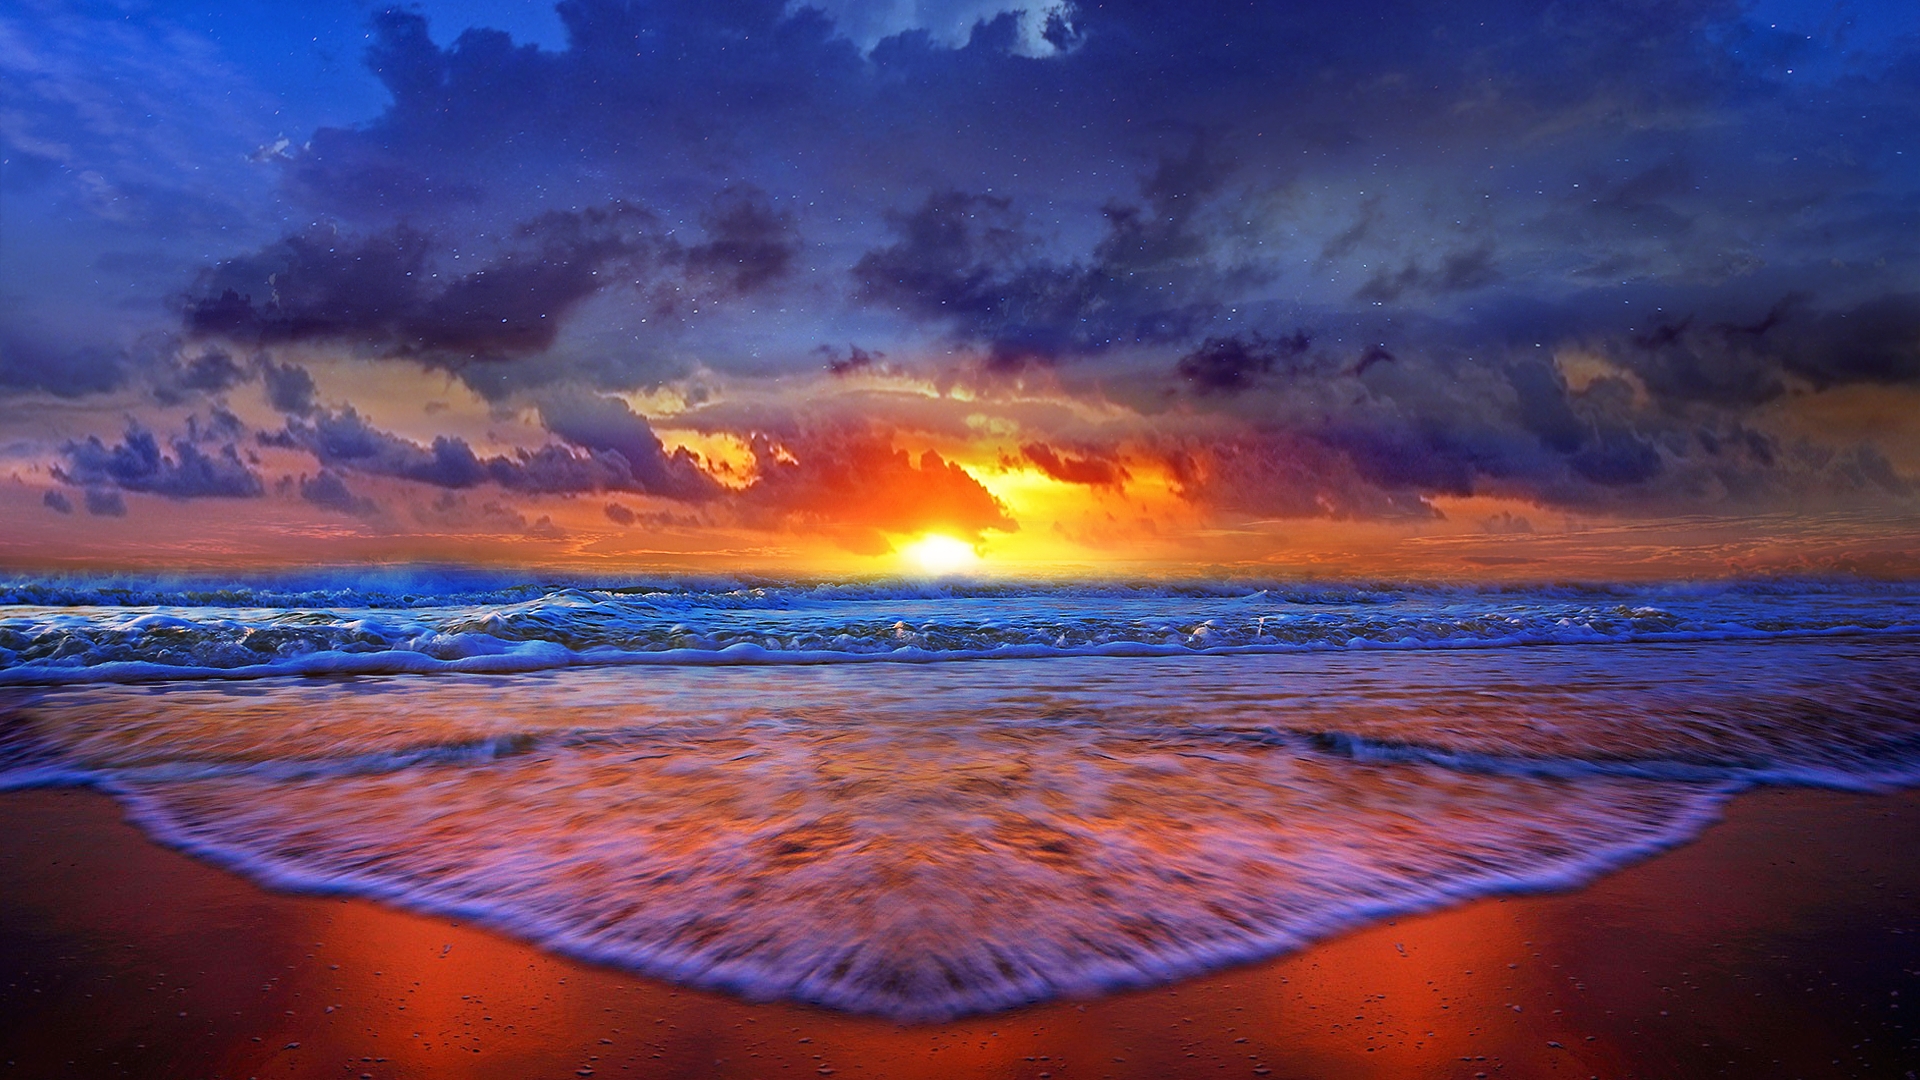 Скачать обои бесплатно Небо, Море, Пляж, Горизонт, Океан, Земля/природа, Закат Солнца картинка на рабочий стол ПК